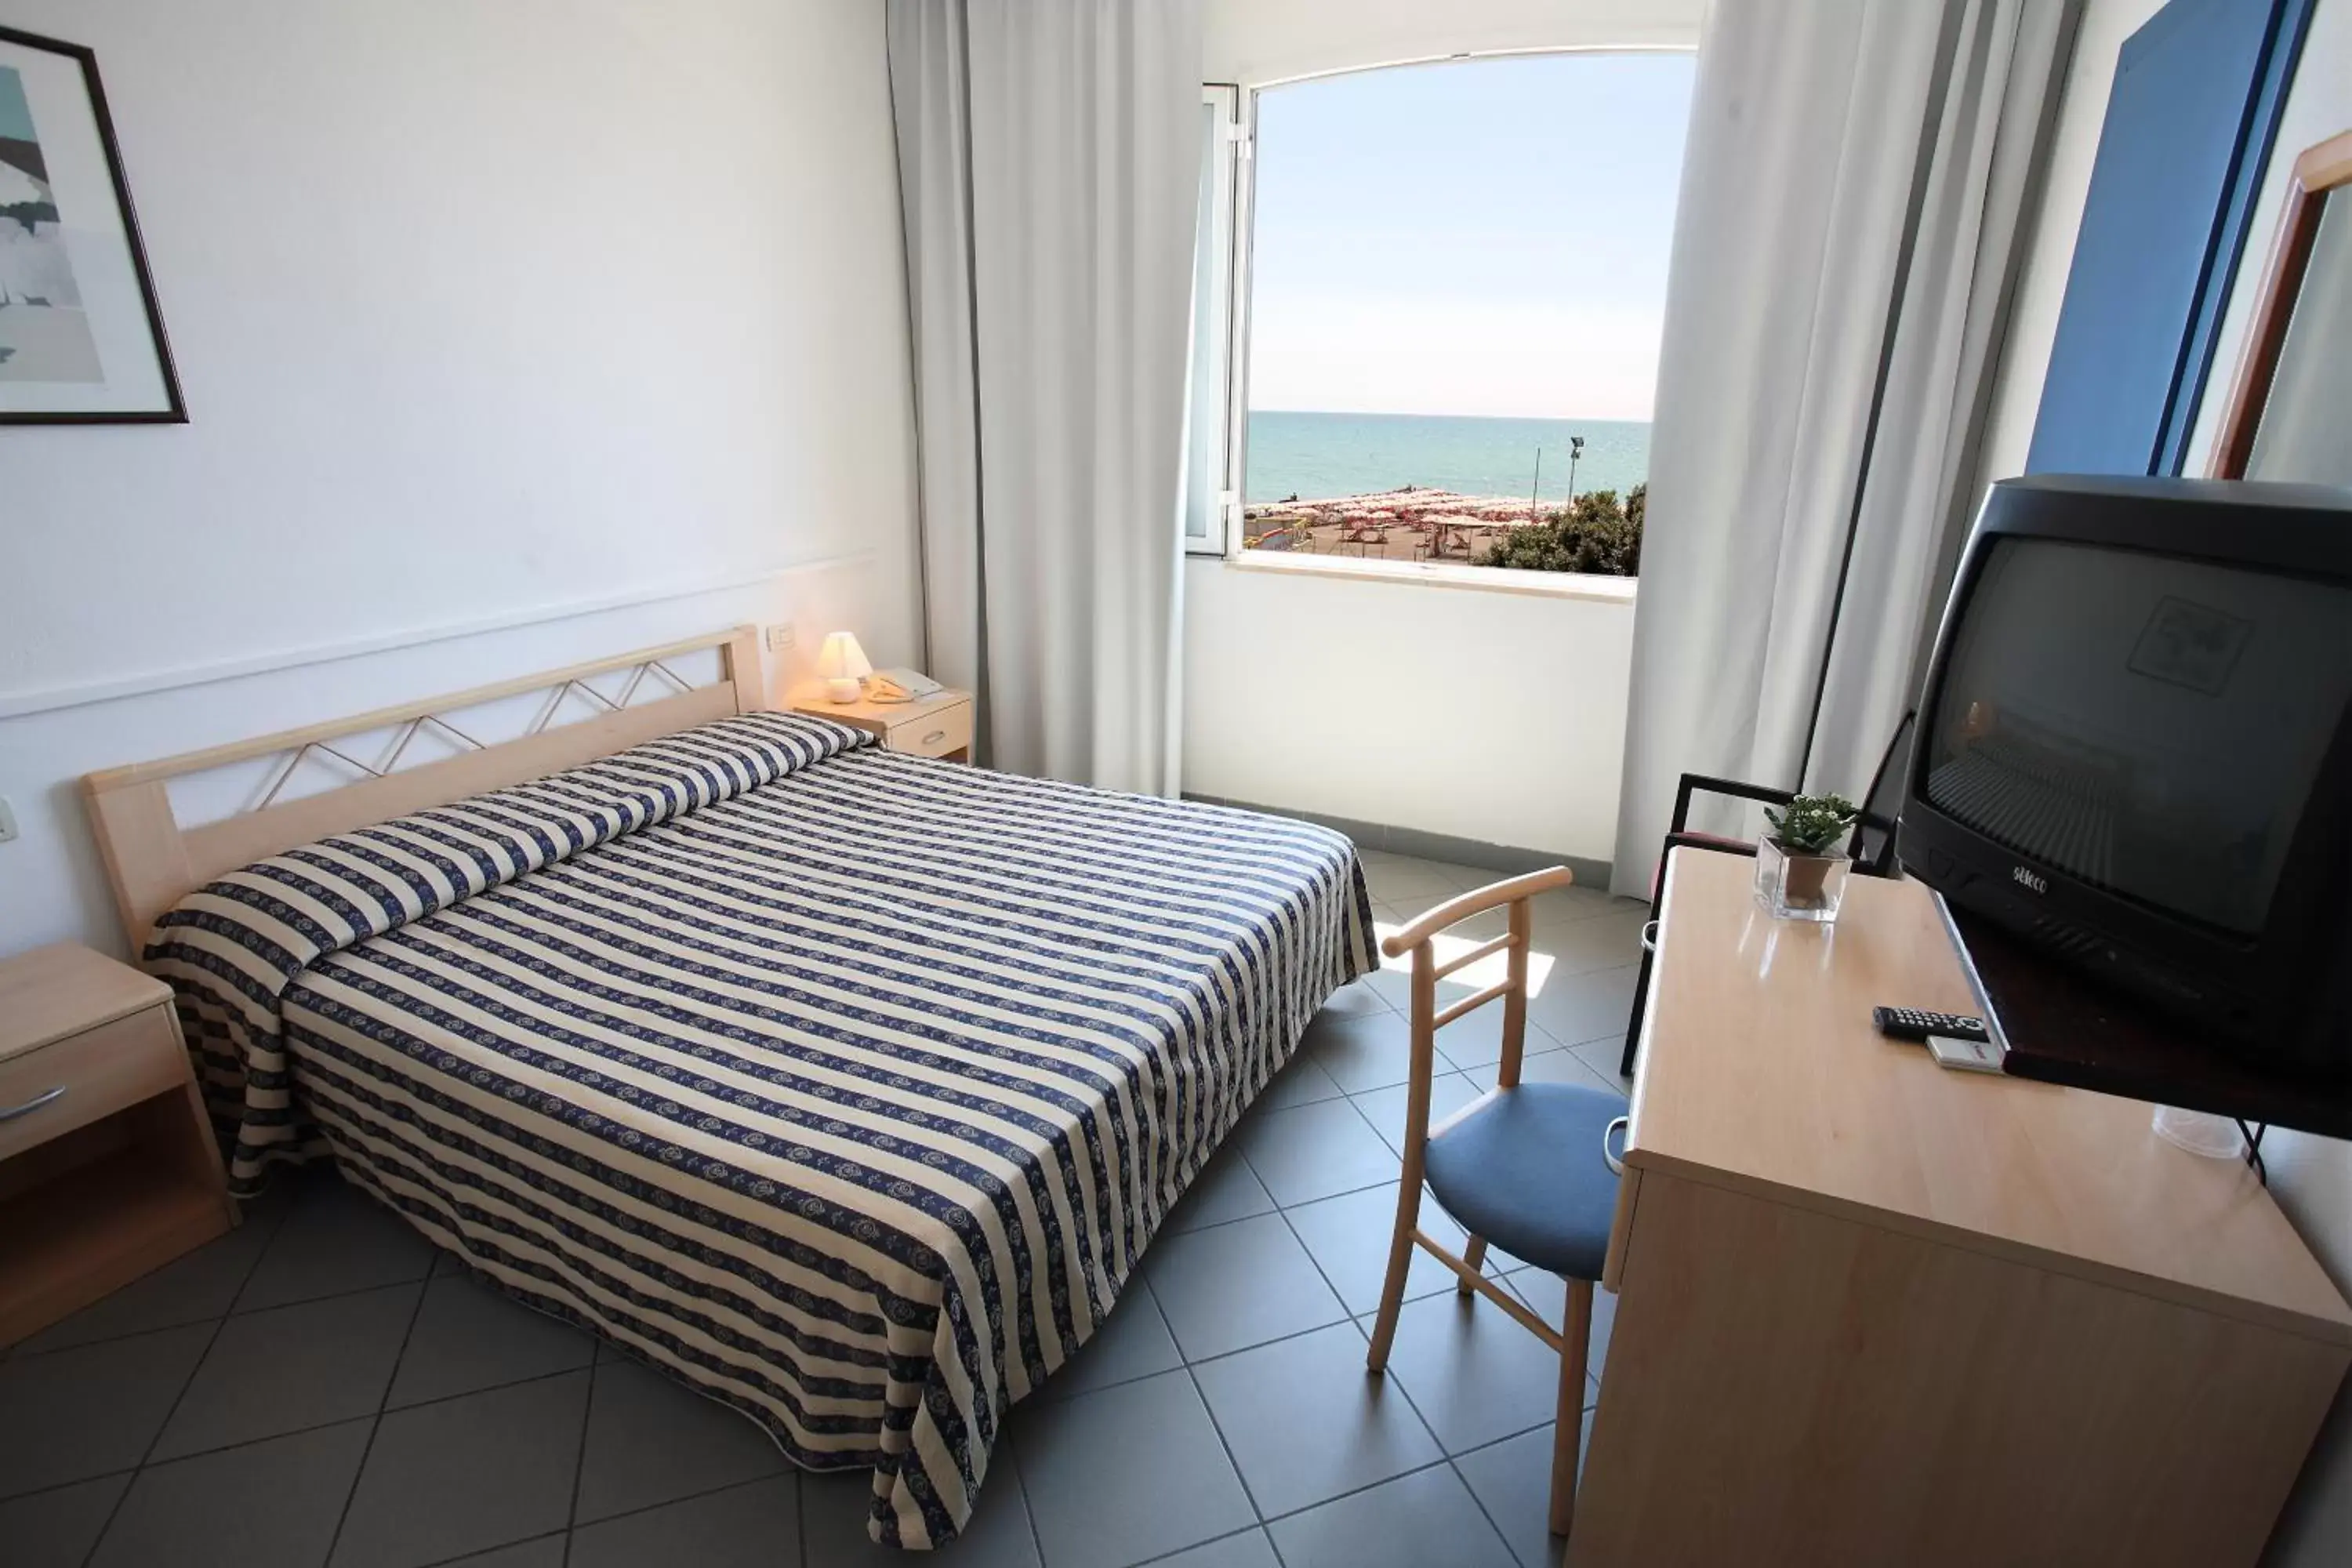 Bed, Room Photo in Hotel Il Settebello